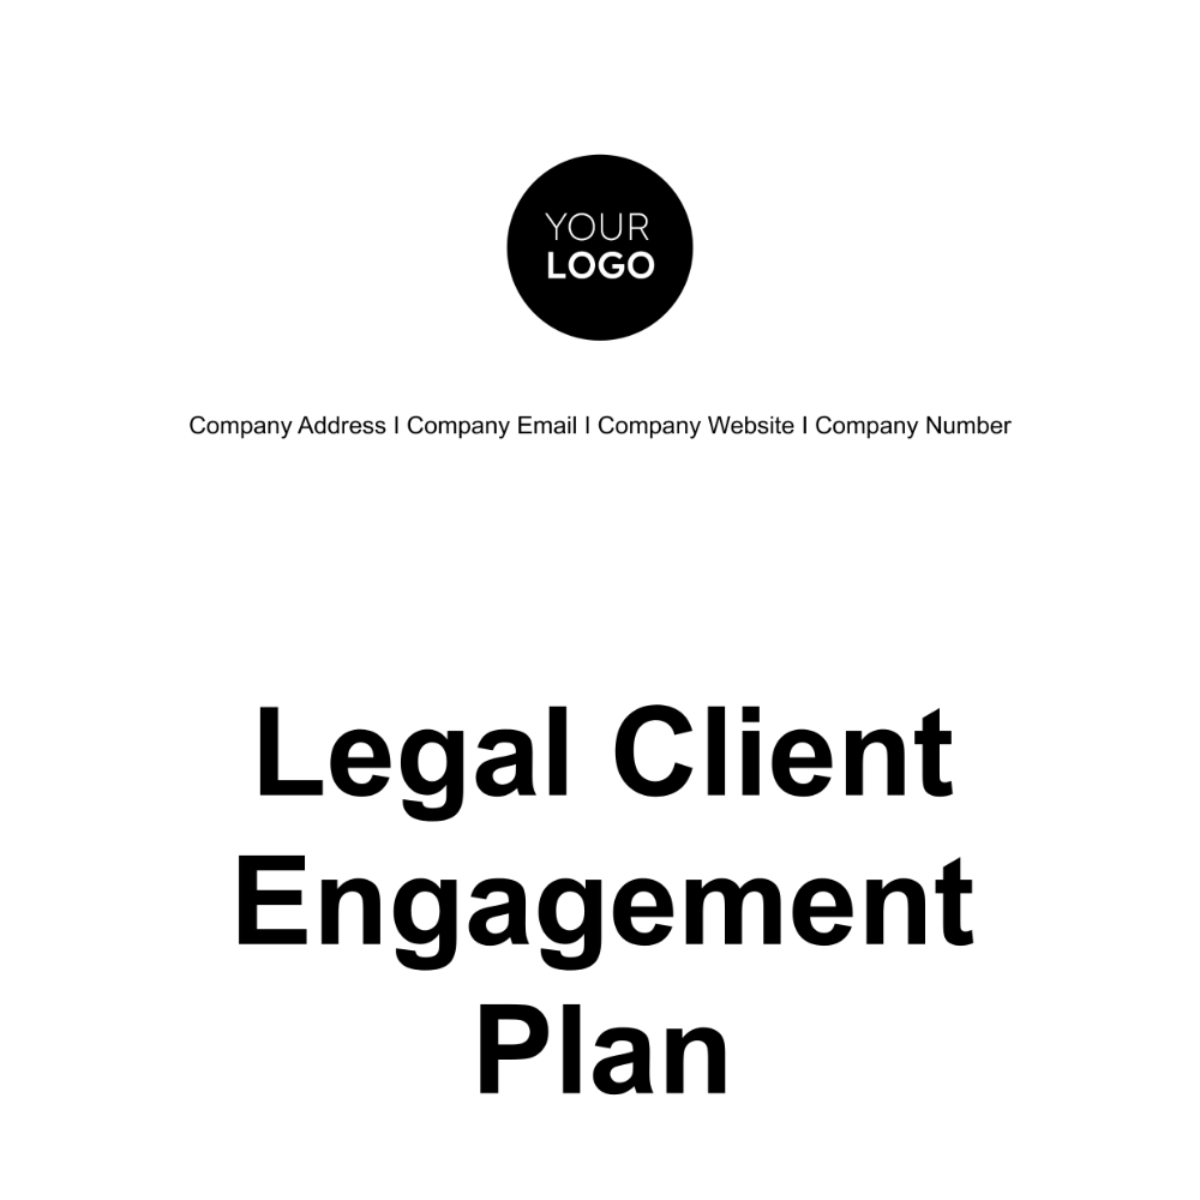 Legal Client Engagement Plan Template